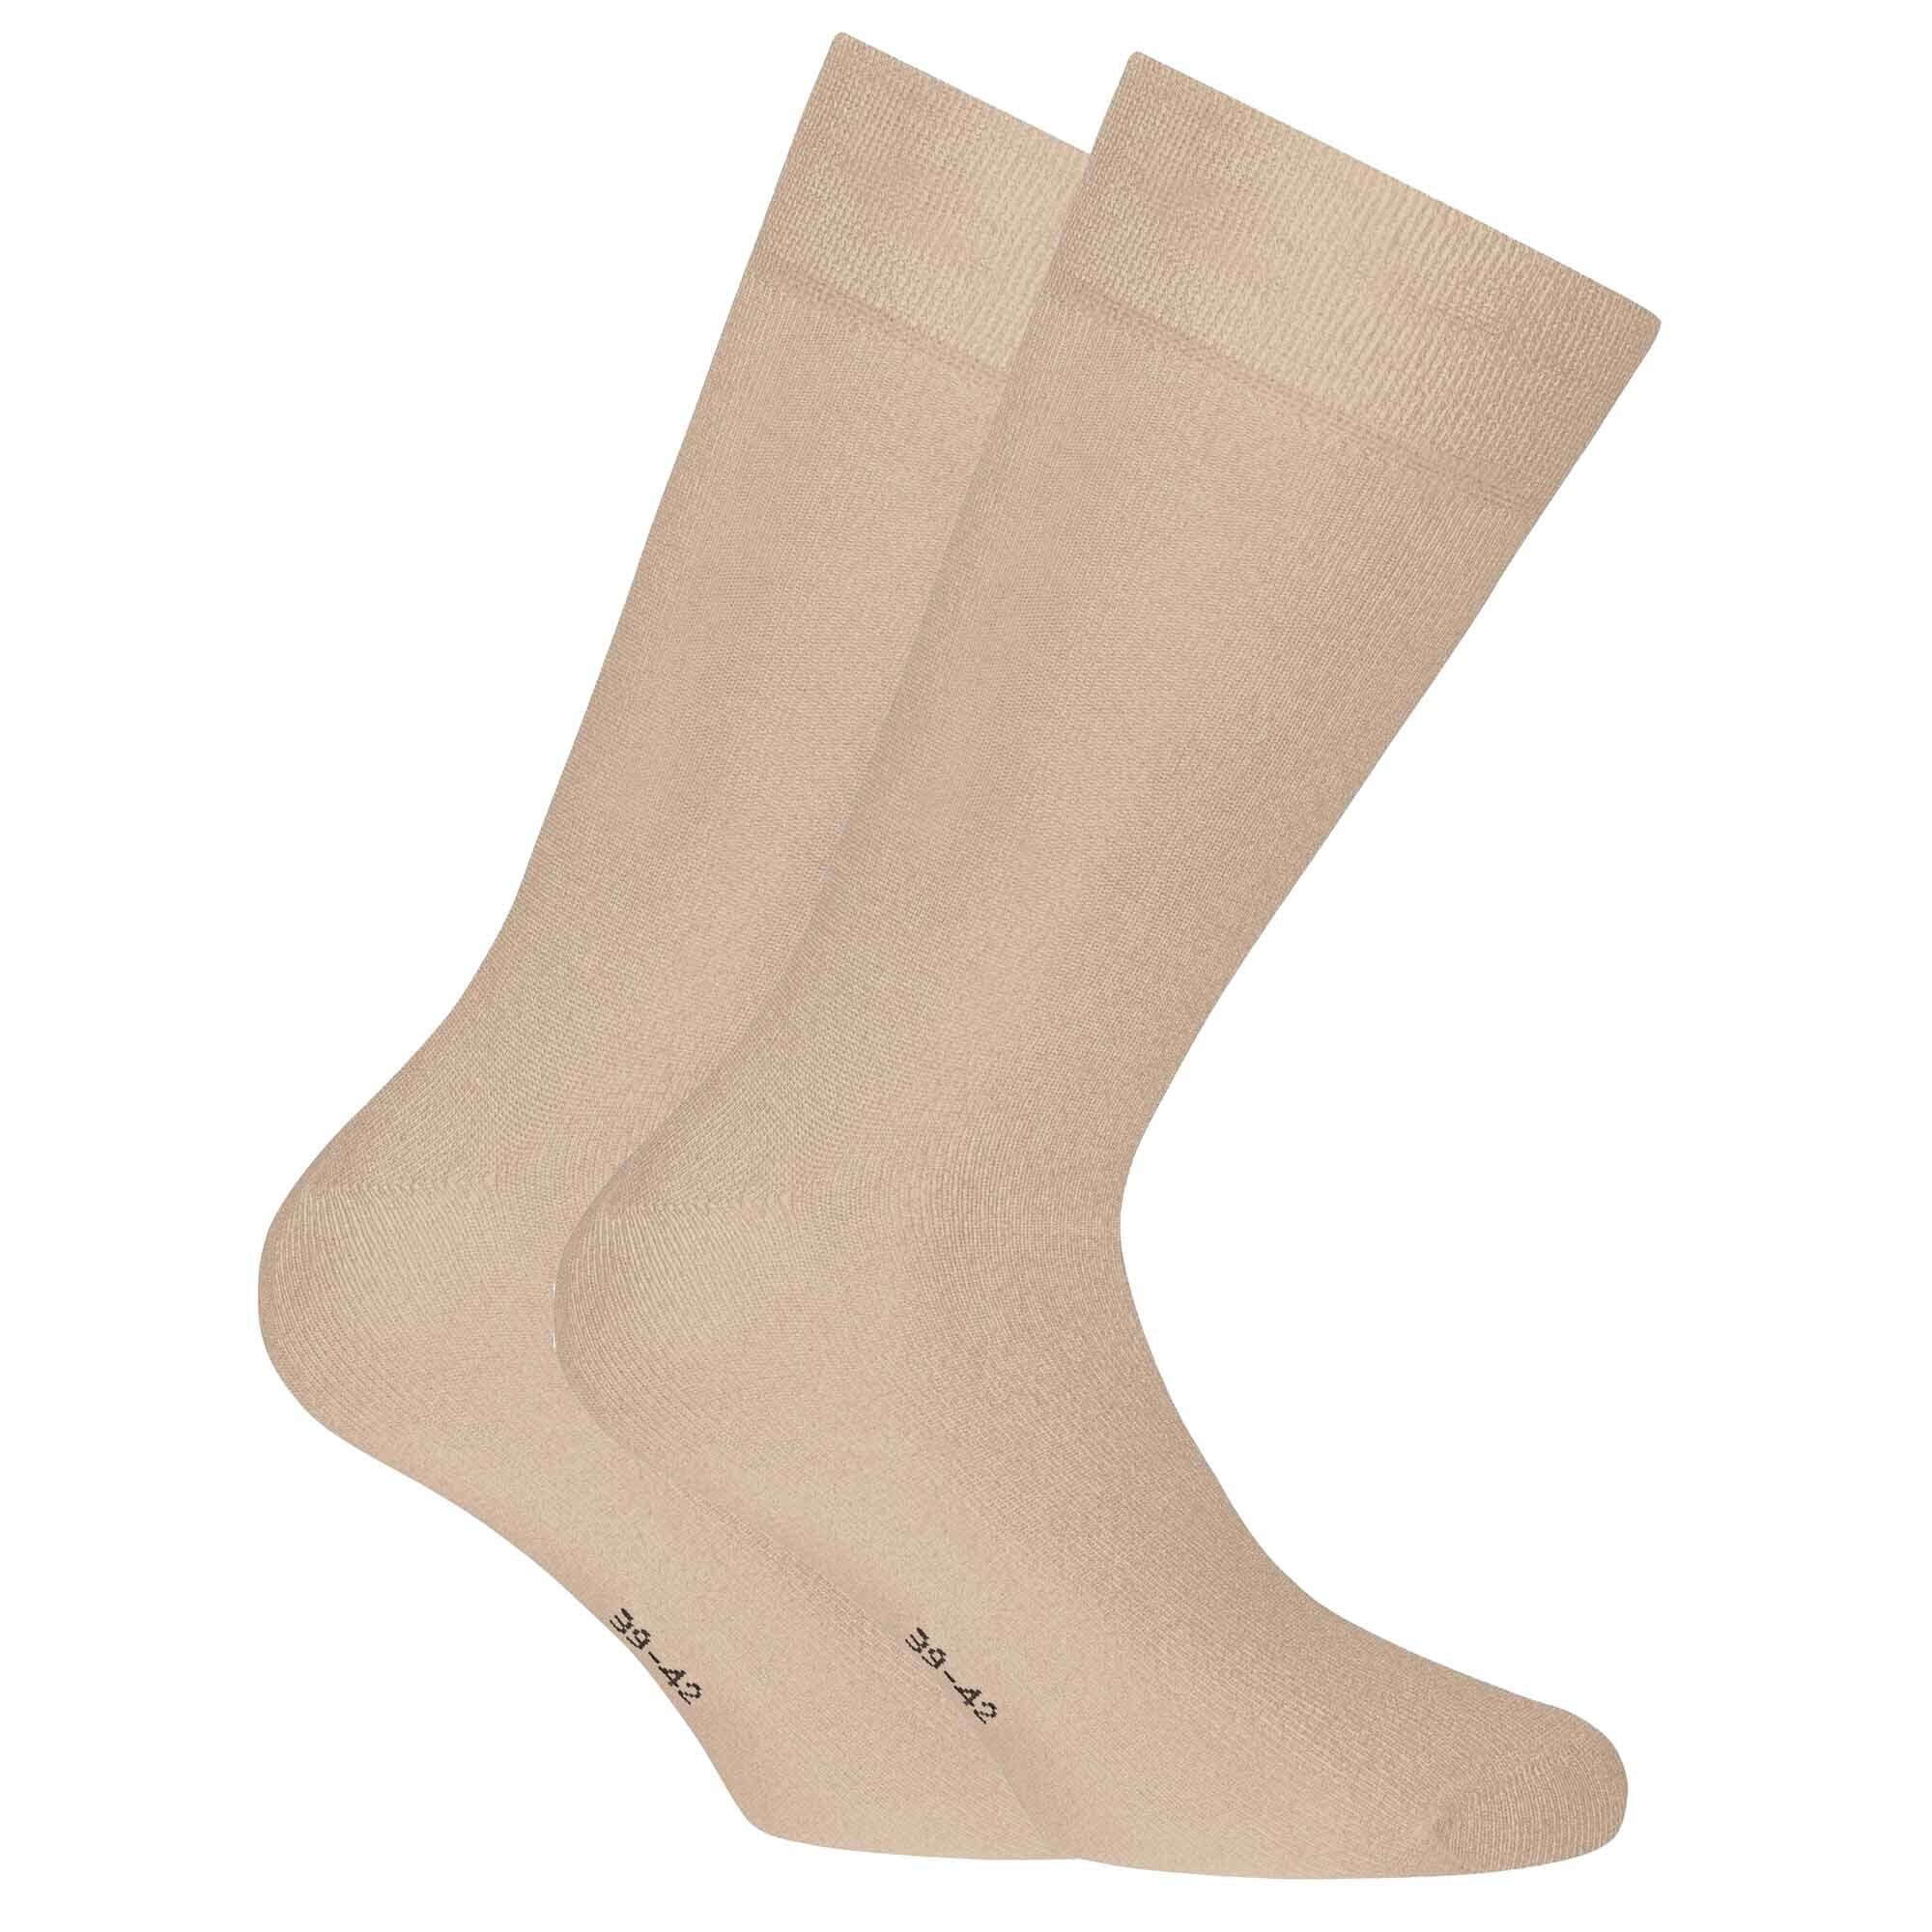 Rohner Socks Kurzsocken Unisex Socken, 2er Pack - Bambus, Kurzsocken Beige